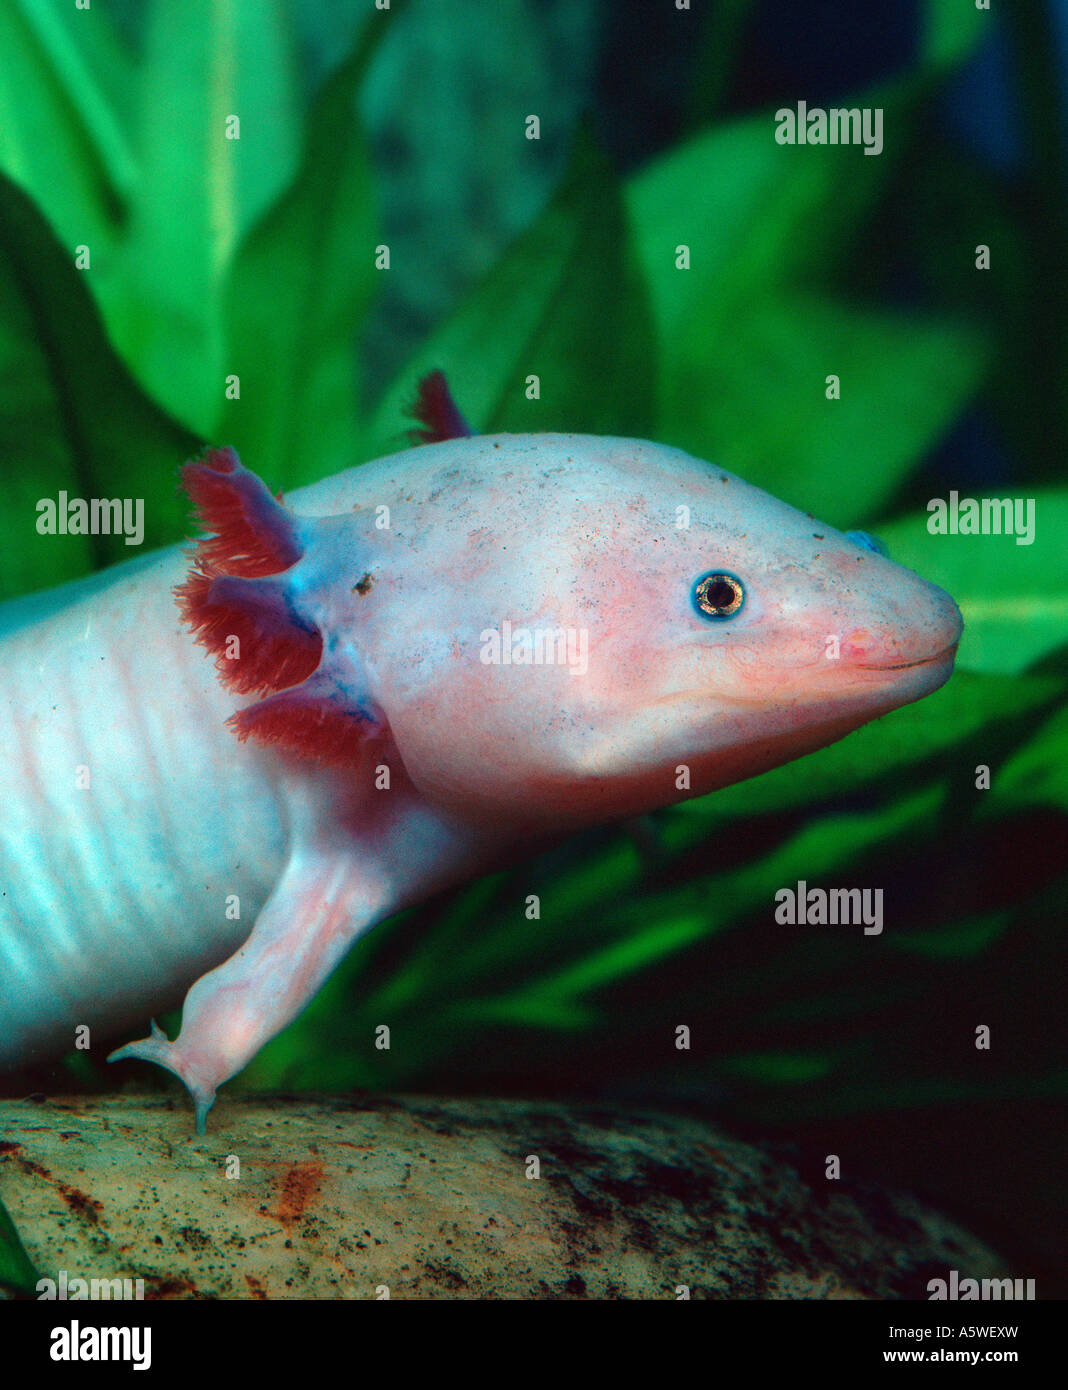 Mexican Salamander / Mexican Axolotl  Stock Photo